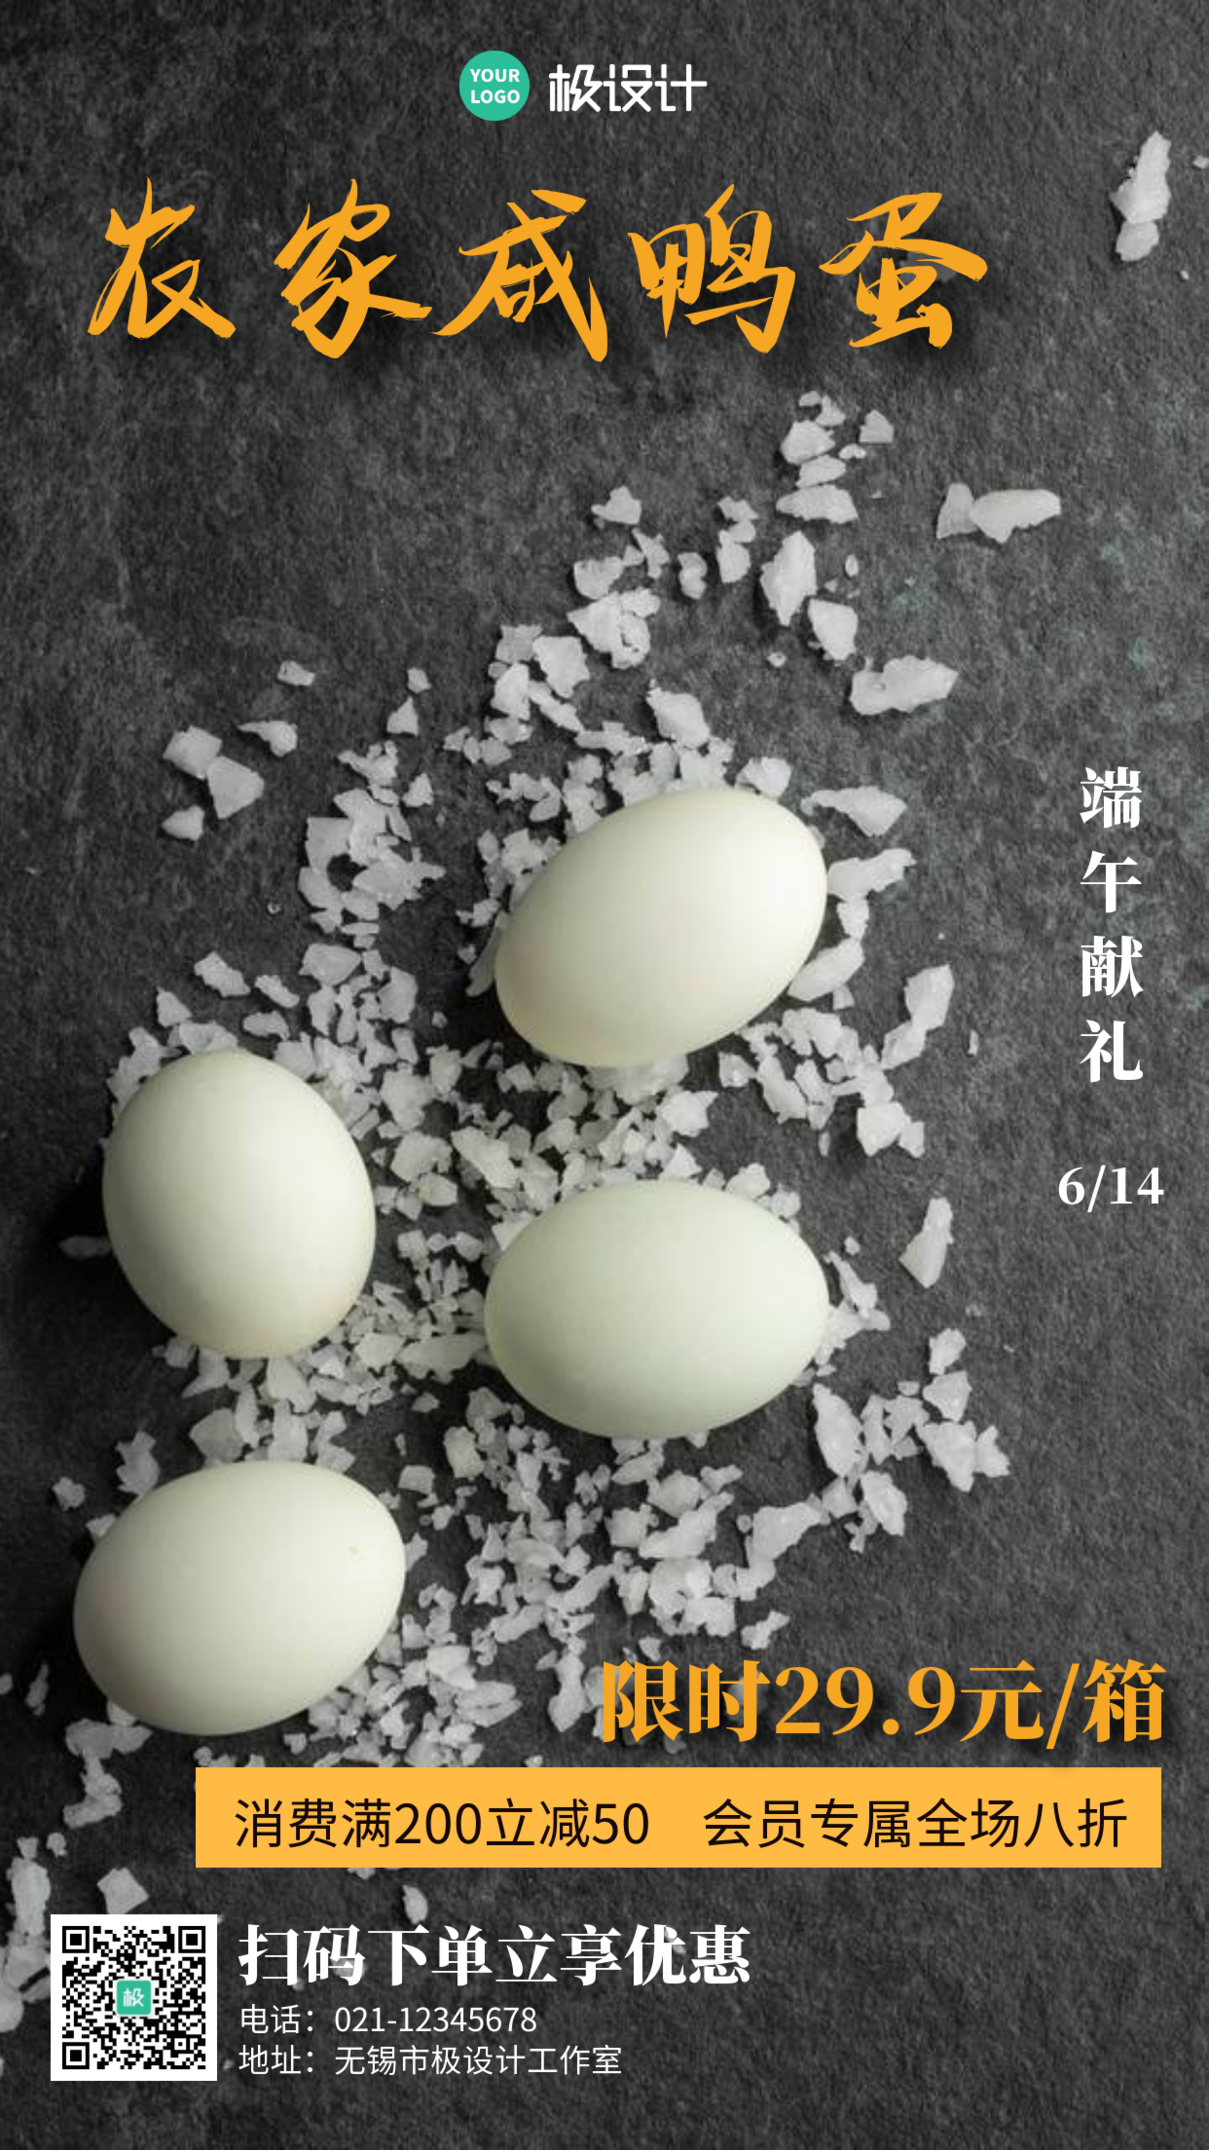 摄影6.14端午节节日咸鸭蛋促销海报